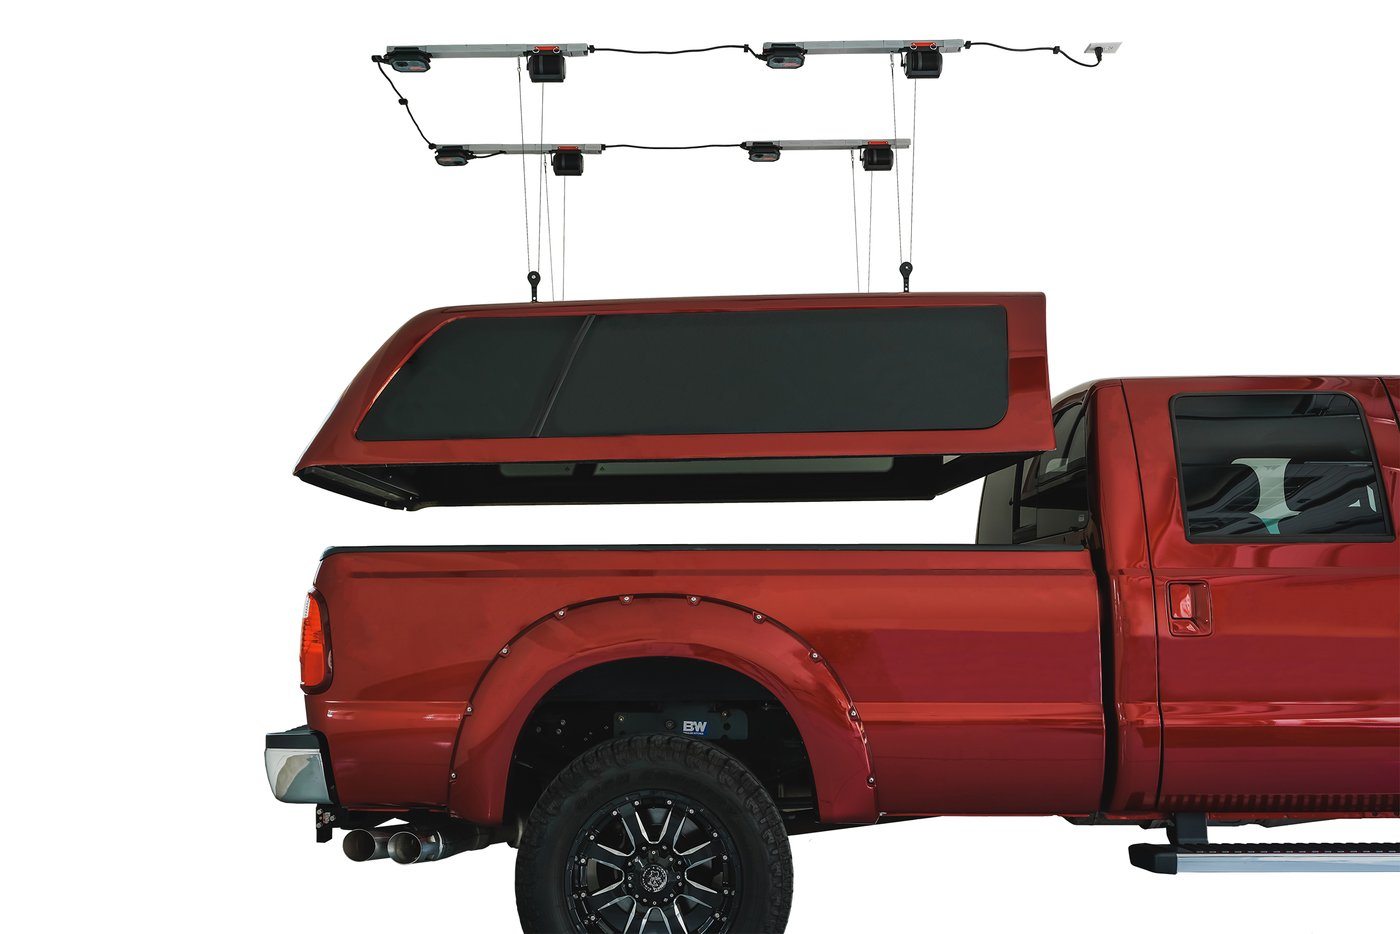 Overhead Storage - Garage Smart Truck Top Lifter